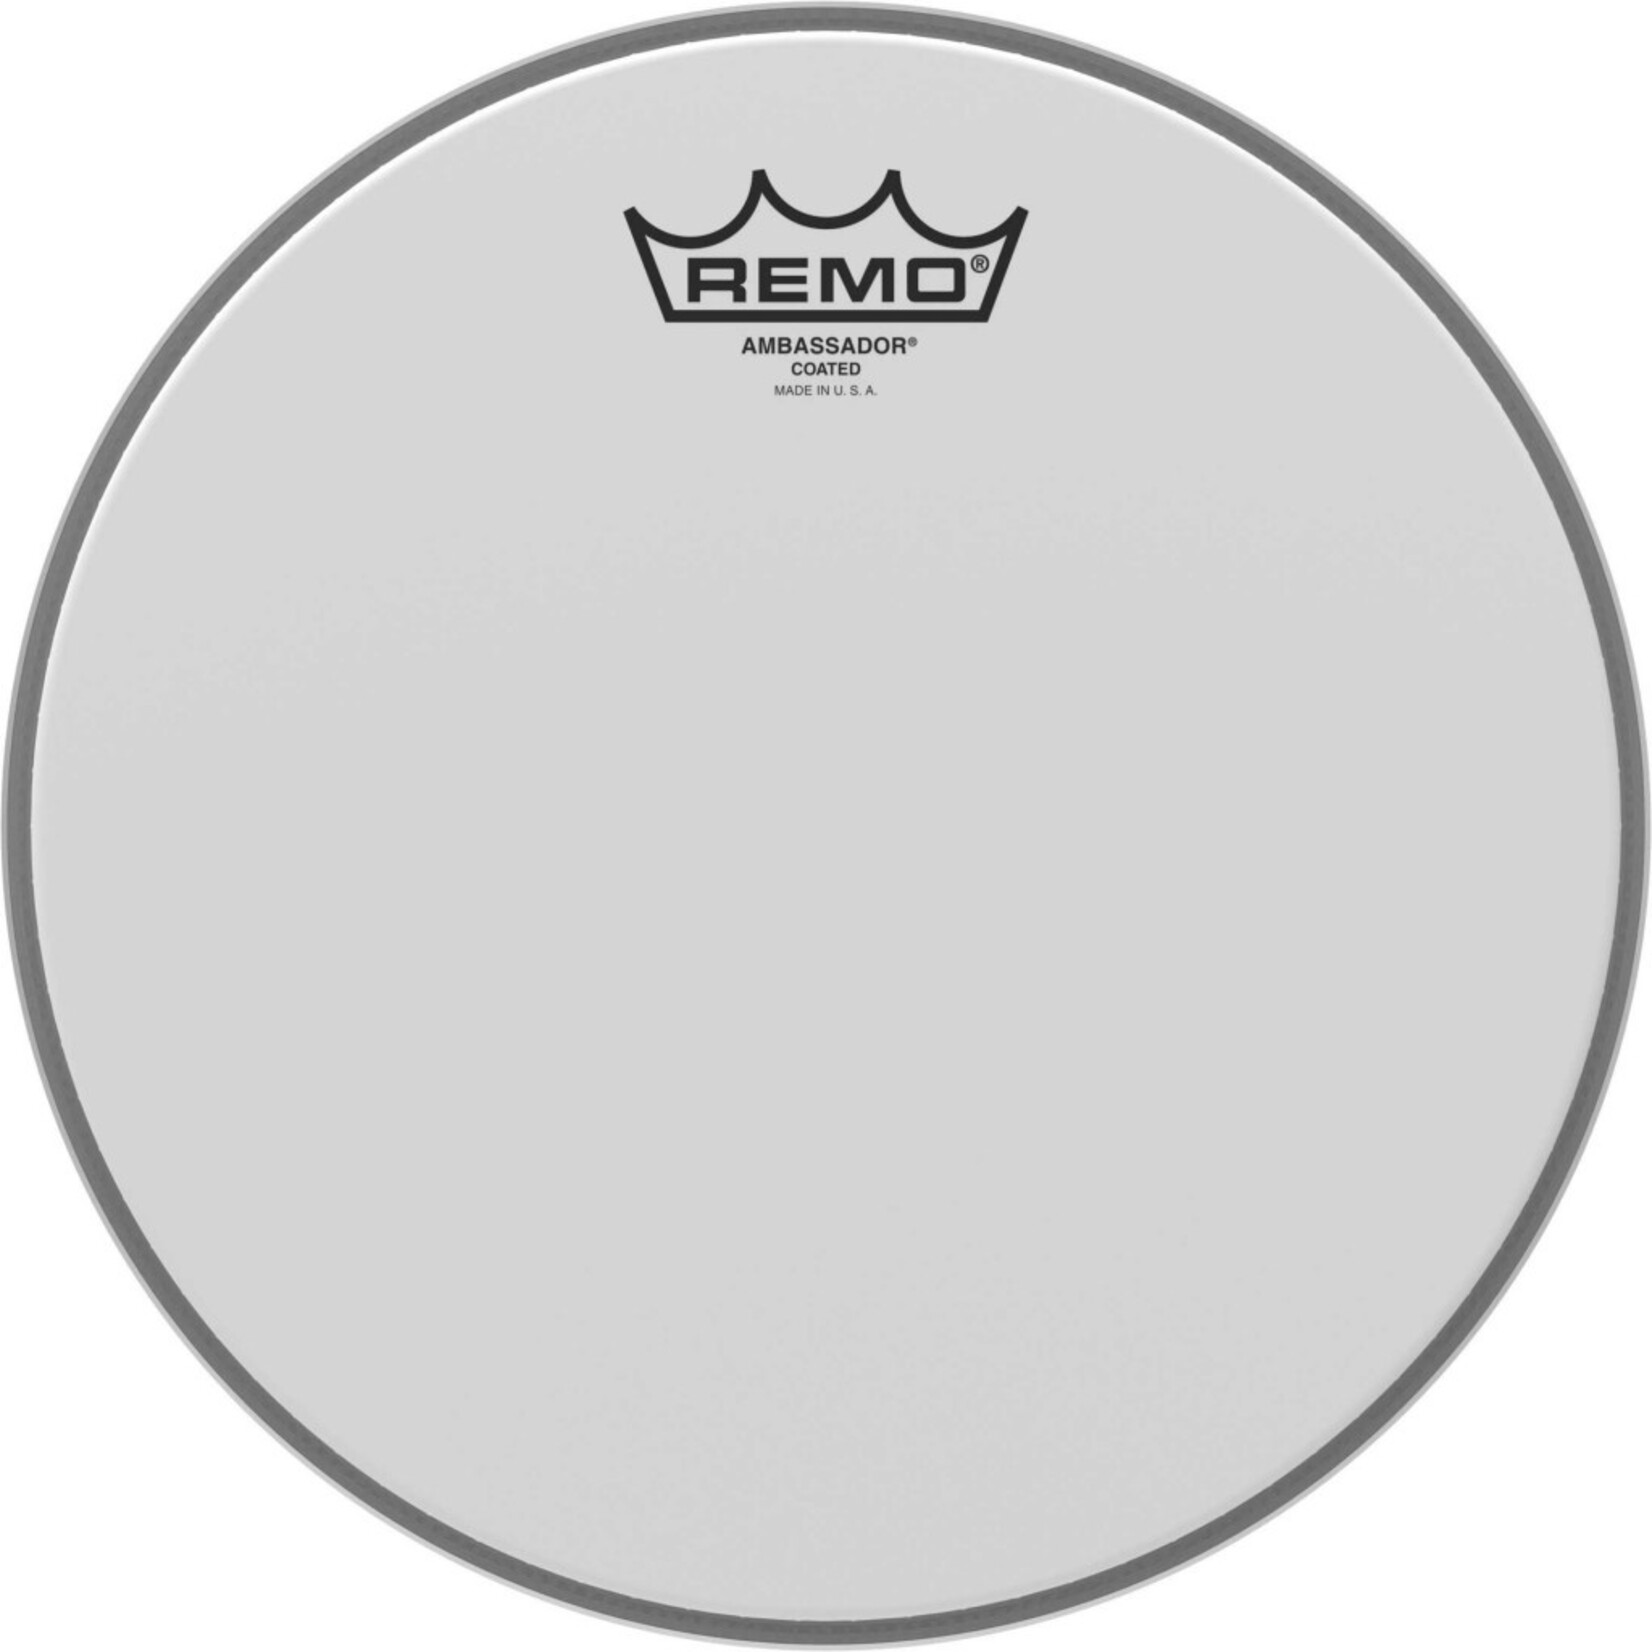 Remo Remo Ambassador